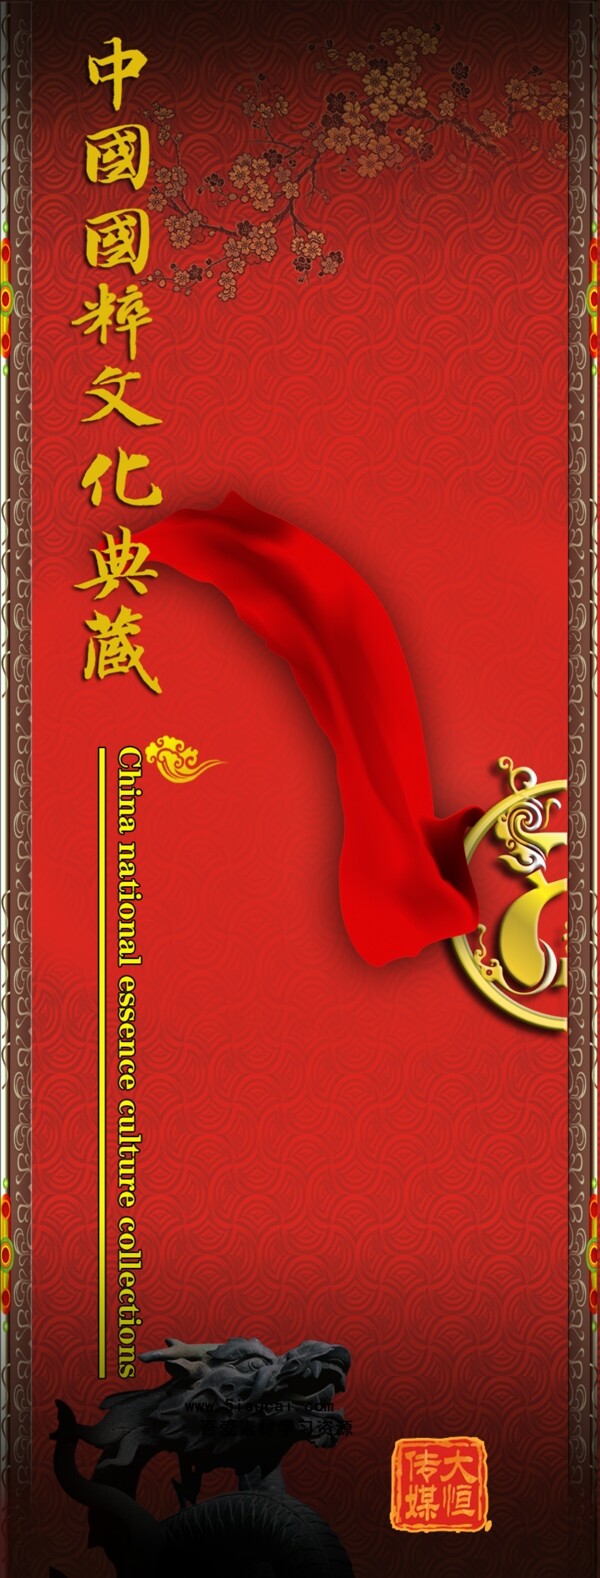 中国国粹文化典藏